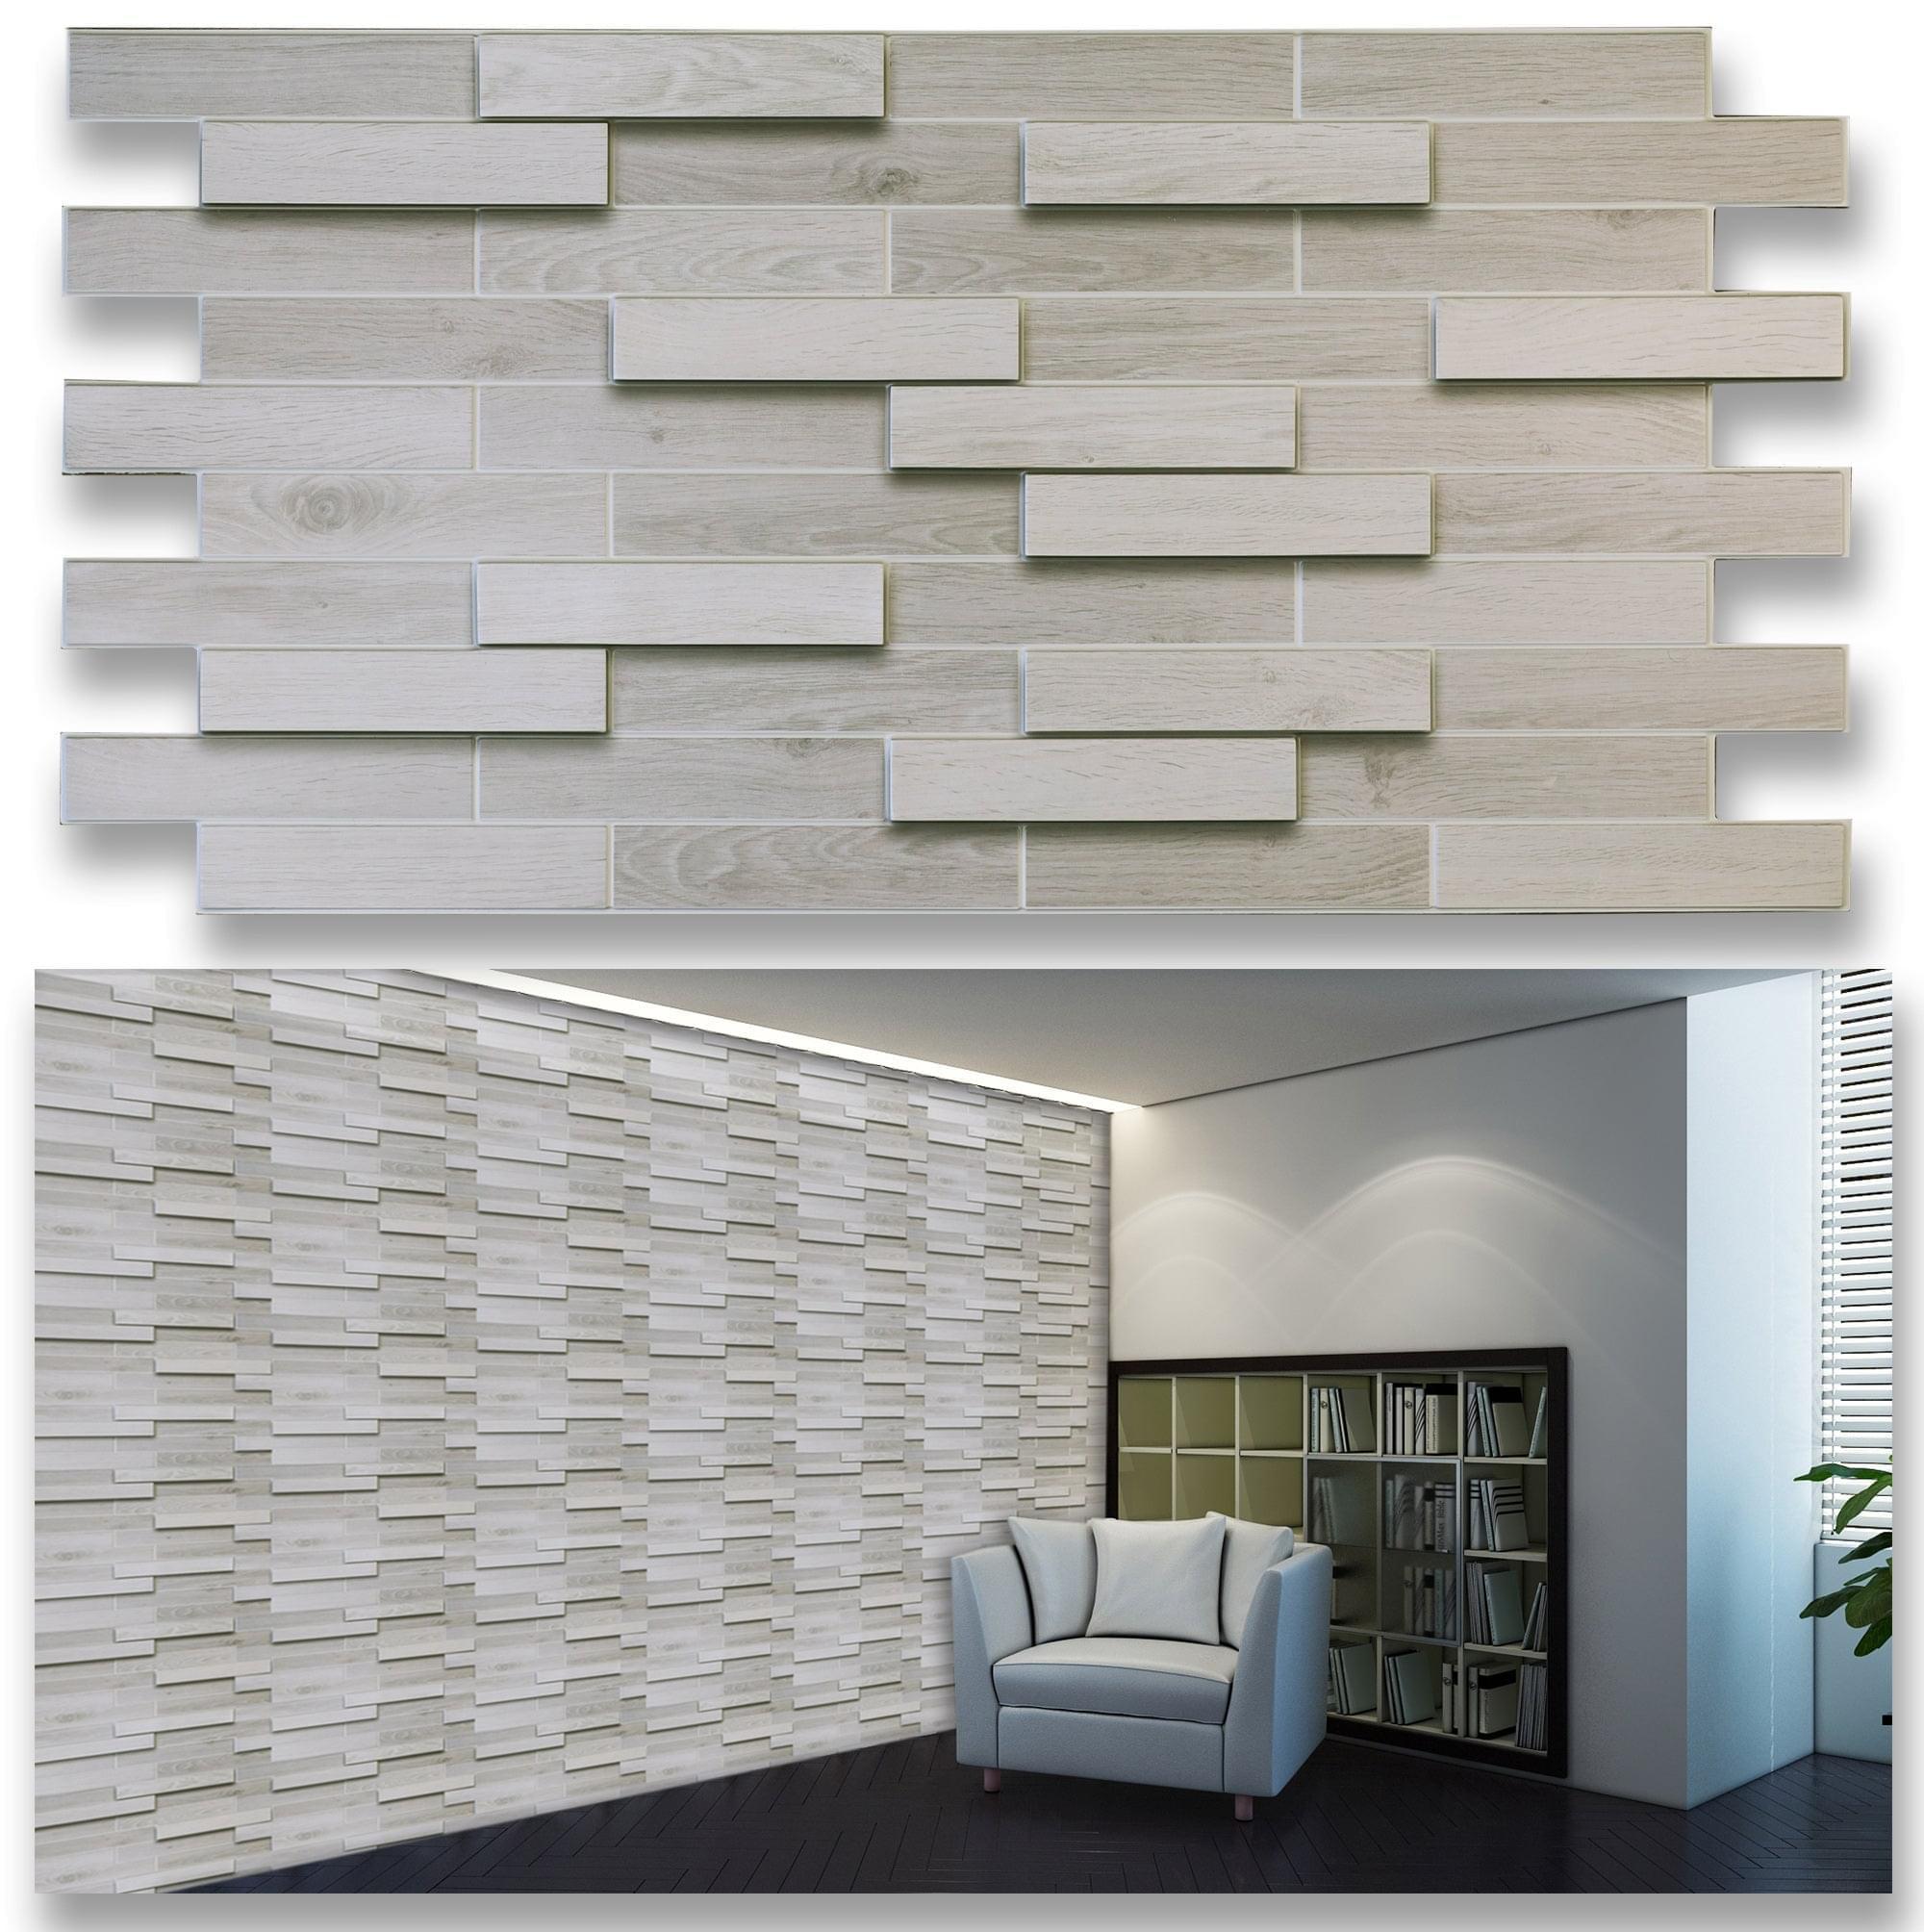 3D Wall Panels - Bleached Oak Parquet - Smart Profile